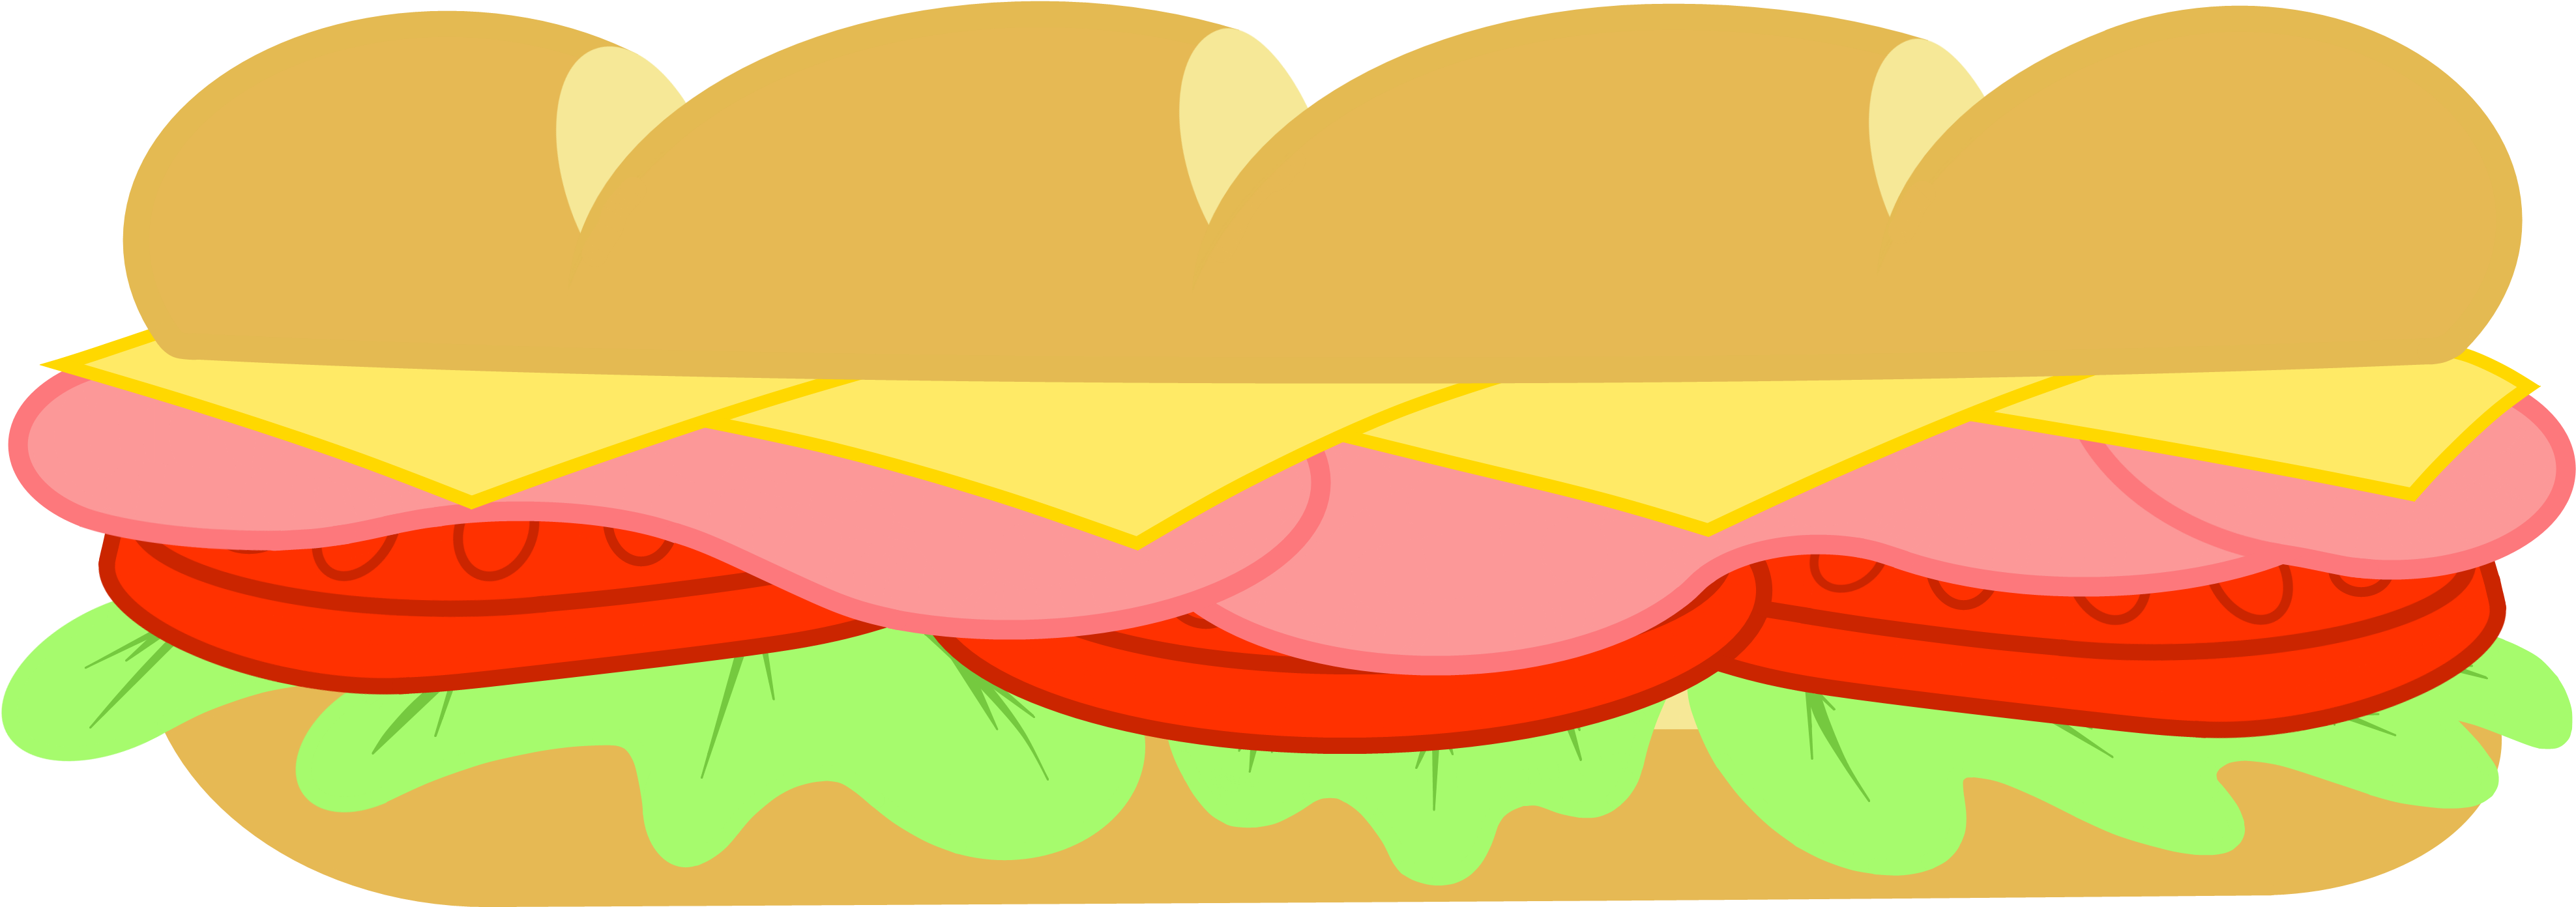 Submarine Sandwich Breakfast Sandwich Butterbrot Ham - Submarine Sandwich Breakfast Sandwich Butterbrot Ham (4000x1477)